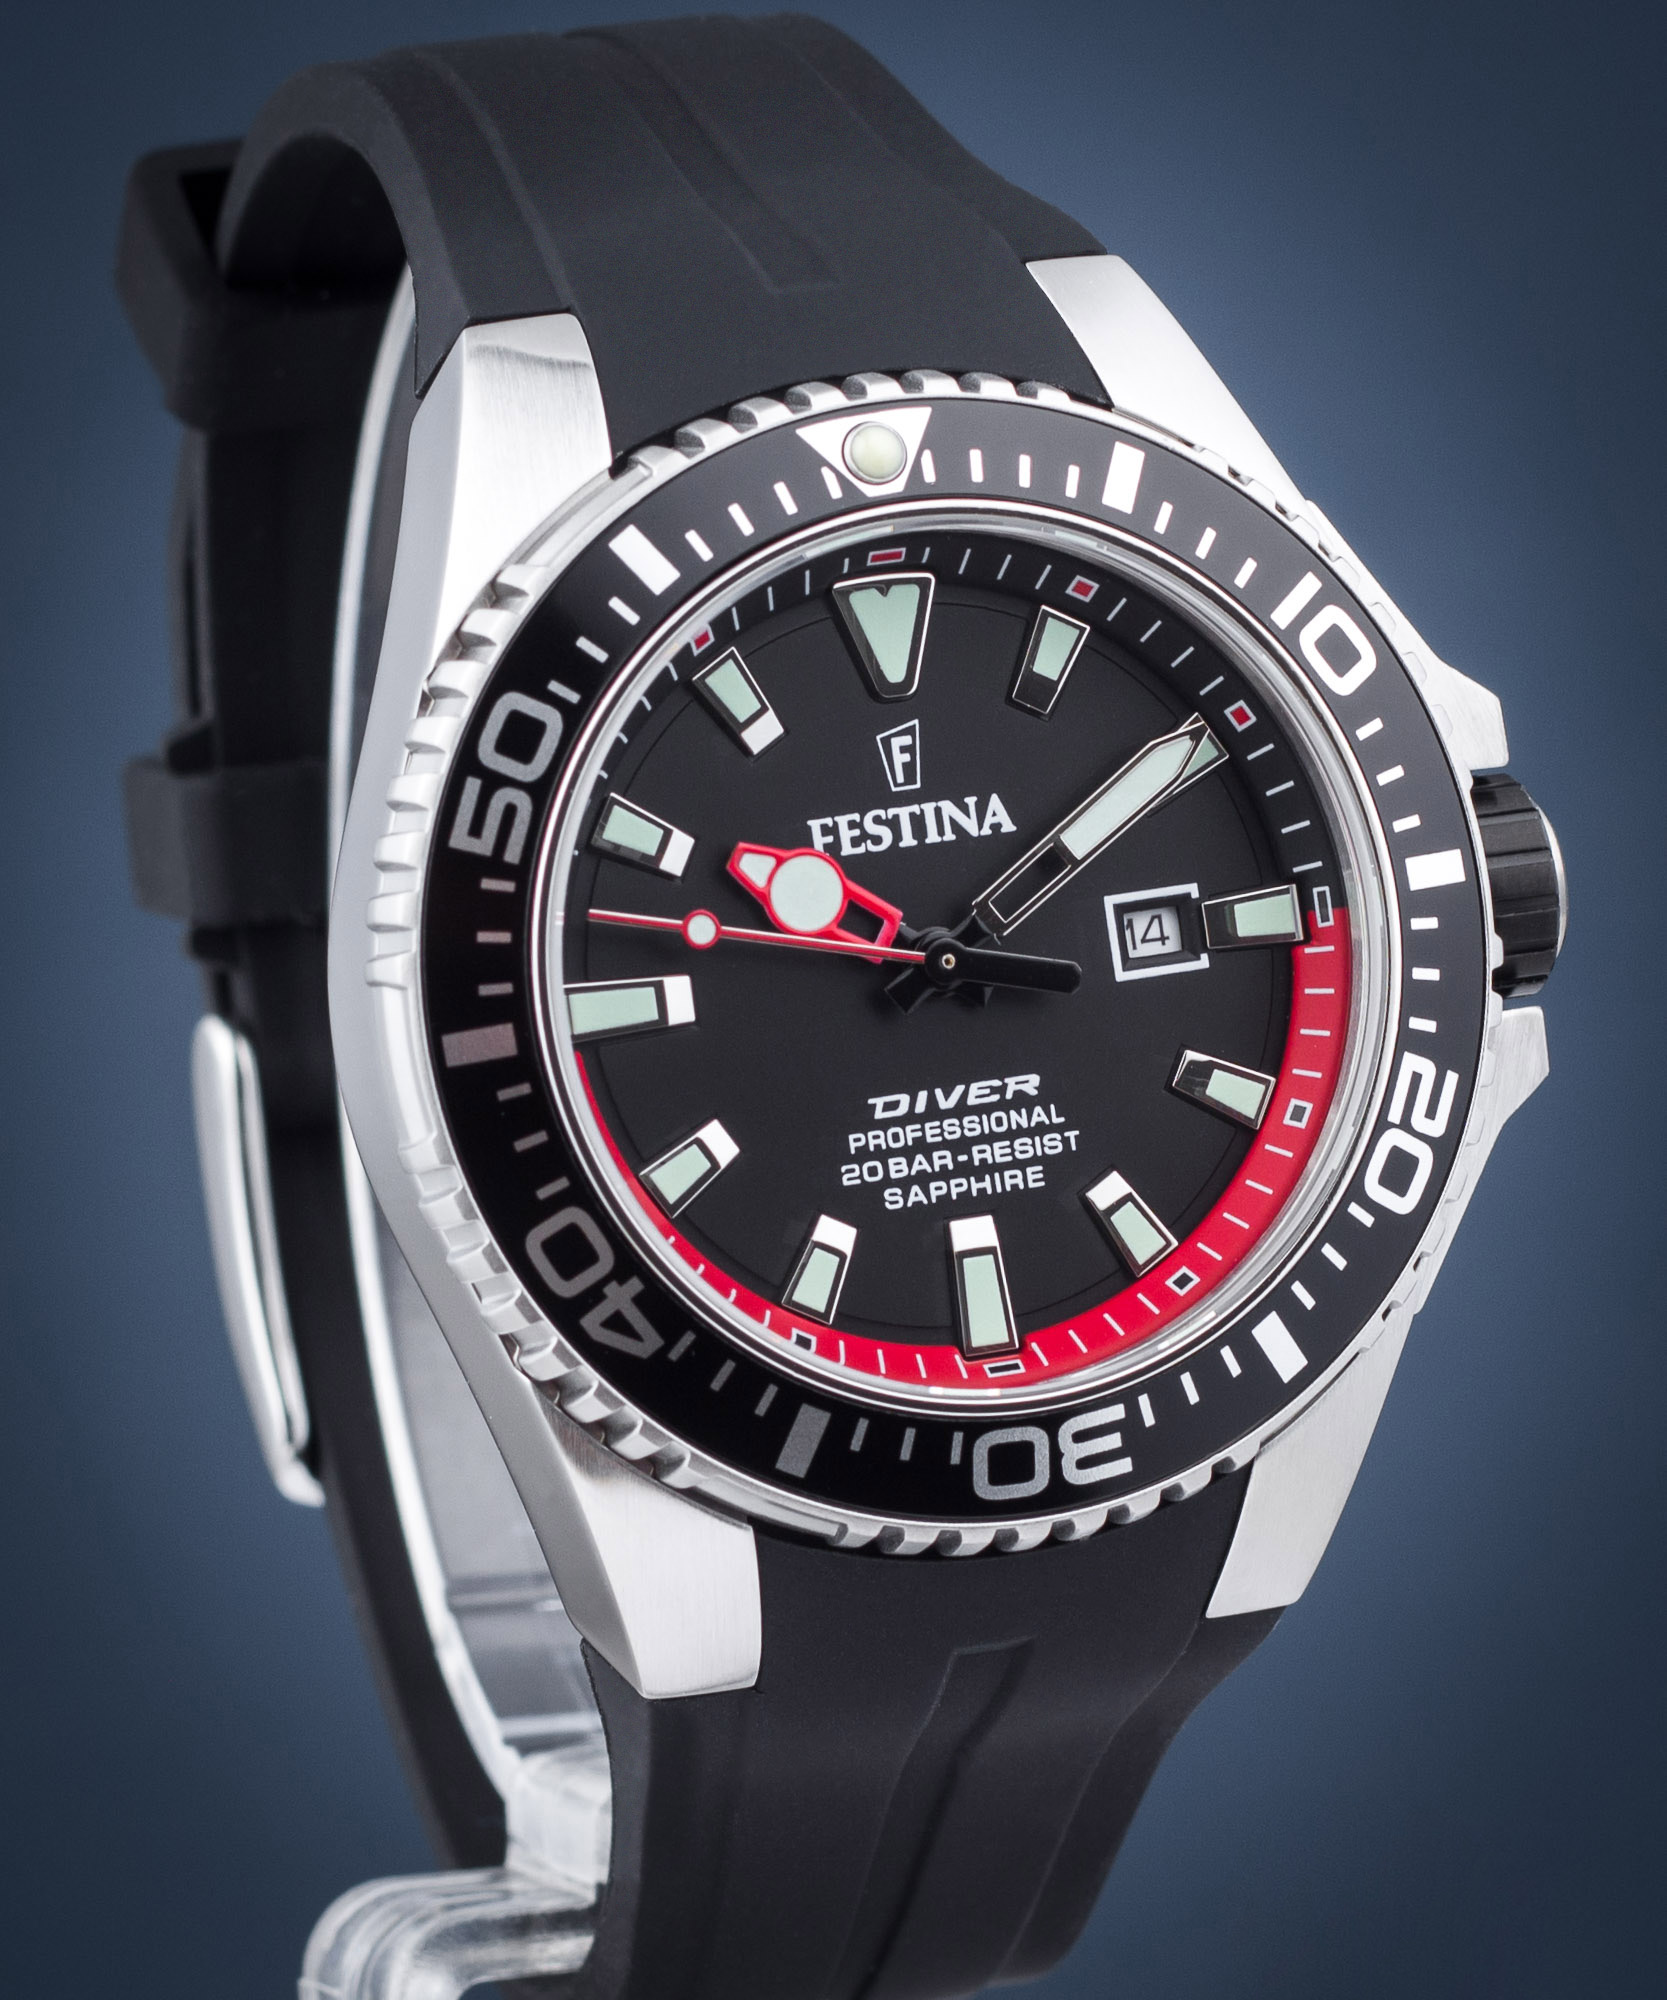 Festina F20664/3 - The Originals Diver Professional Watch •